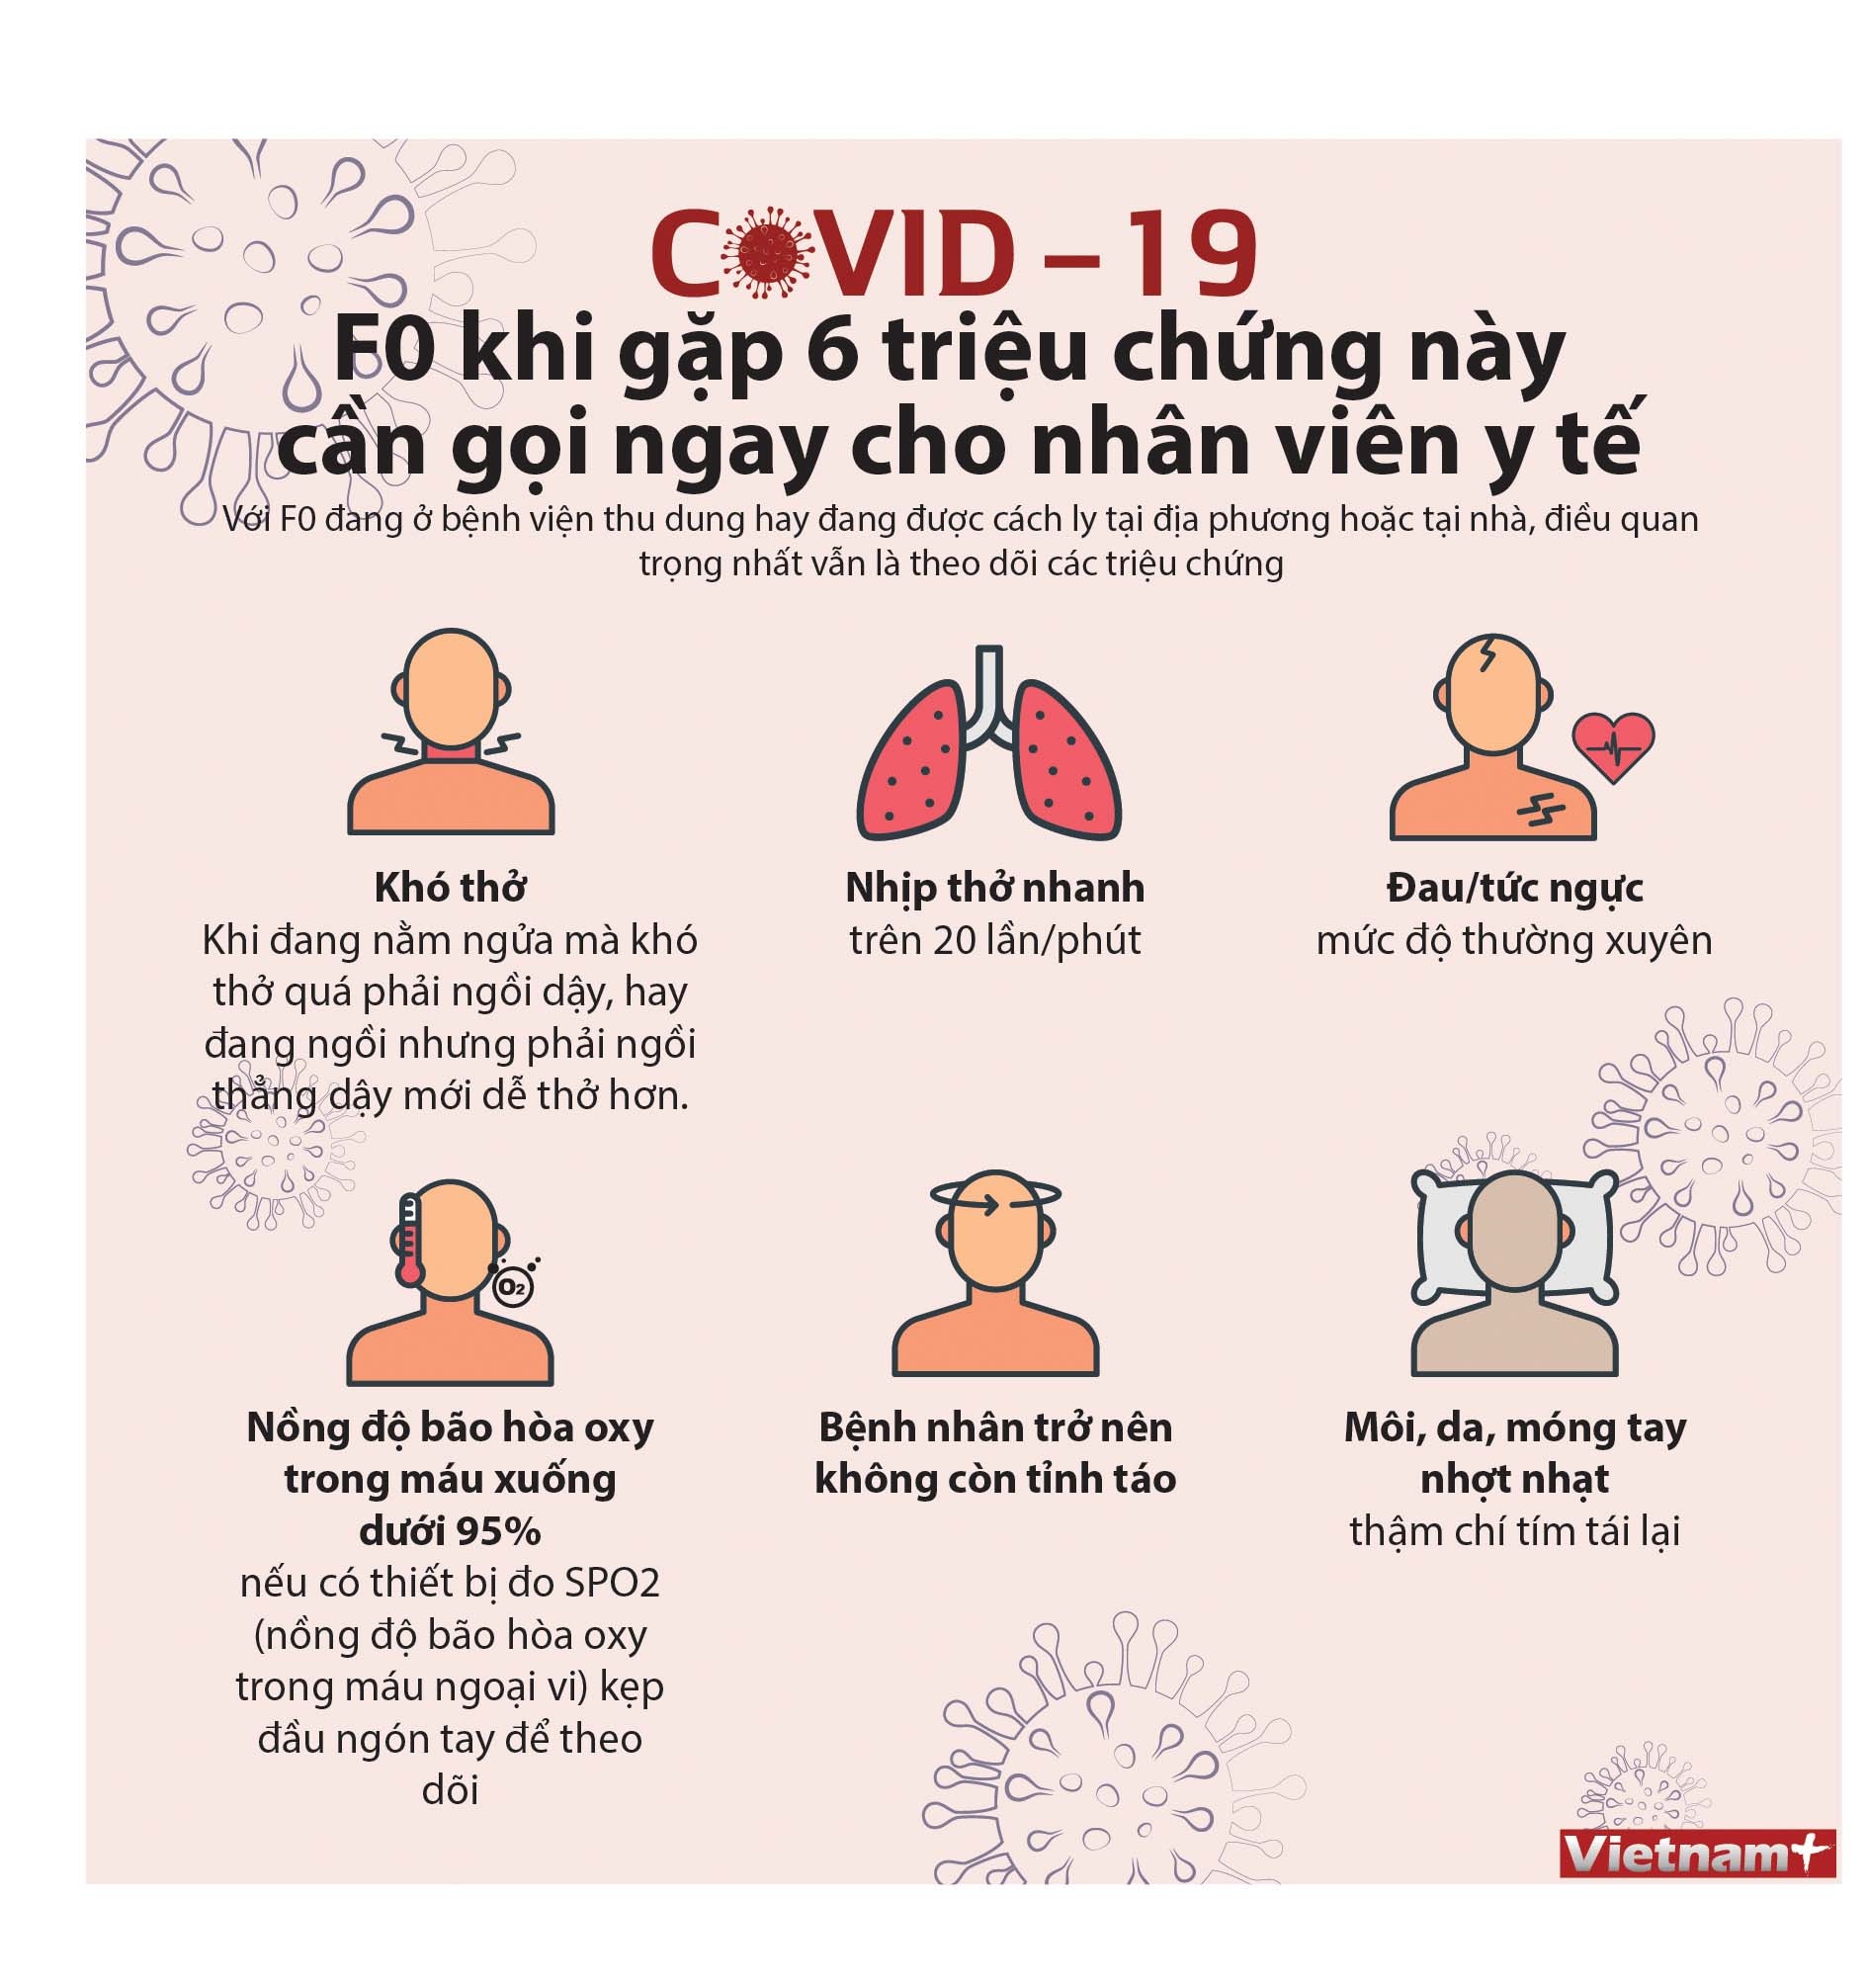 Dịch Covid-19: F0 khi gặp 6 triệu chứng này cần gọi ngay cho nhân viên y tế